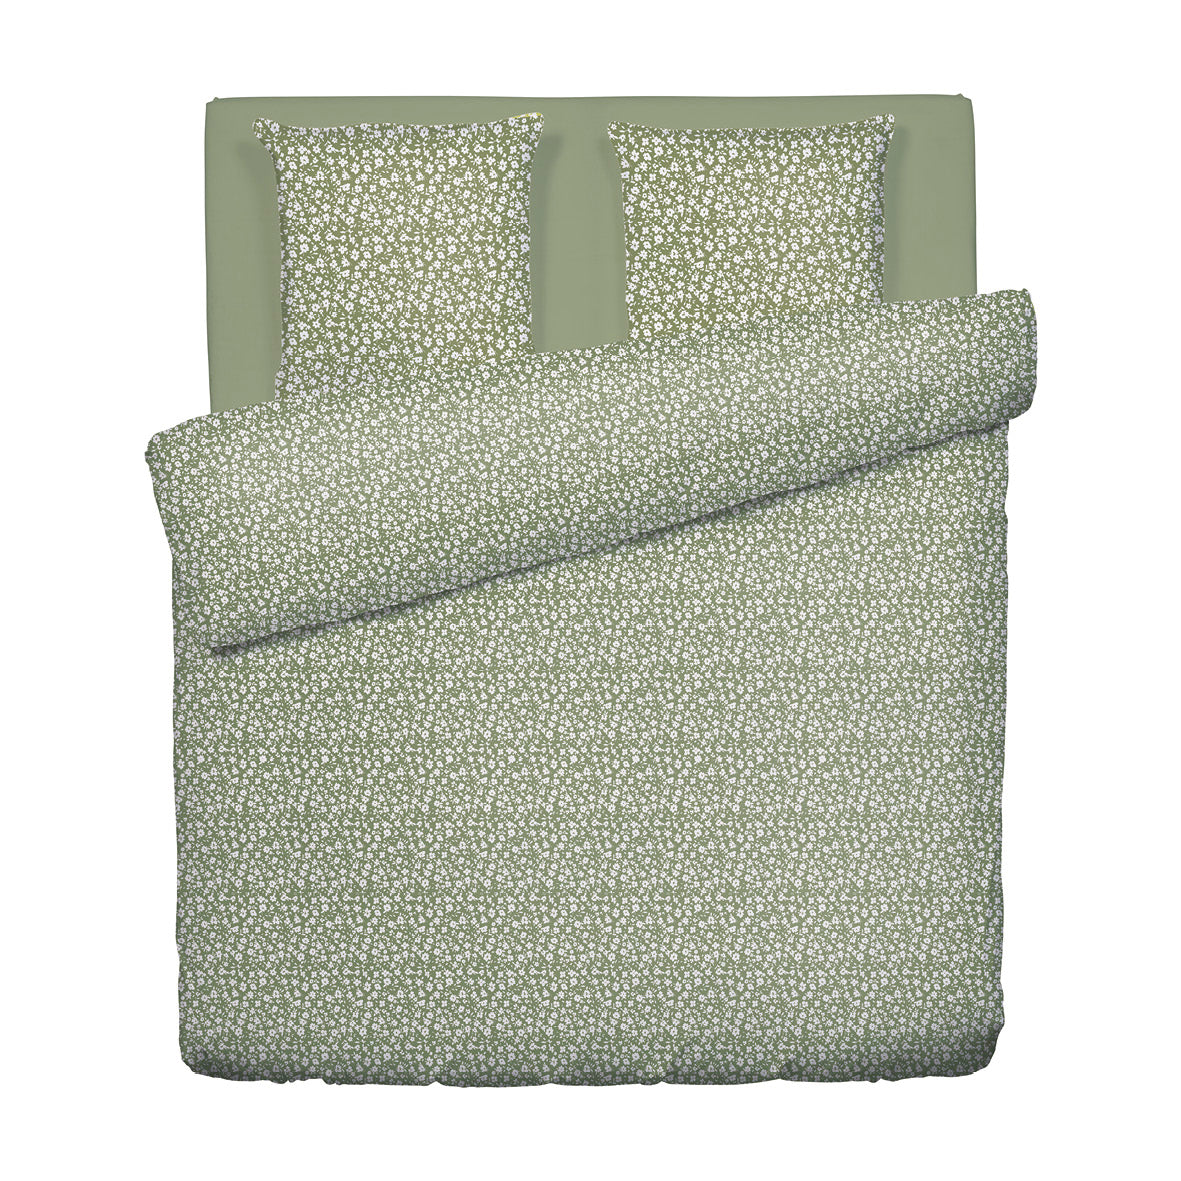 Duvet cover + pillowcase(s) cotton satin - Les Yeux de Suzanne Green